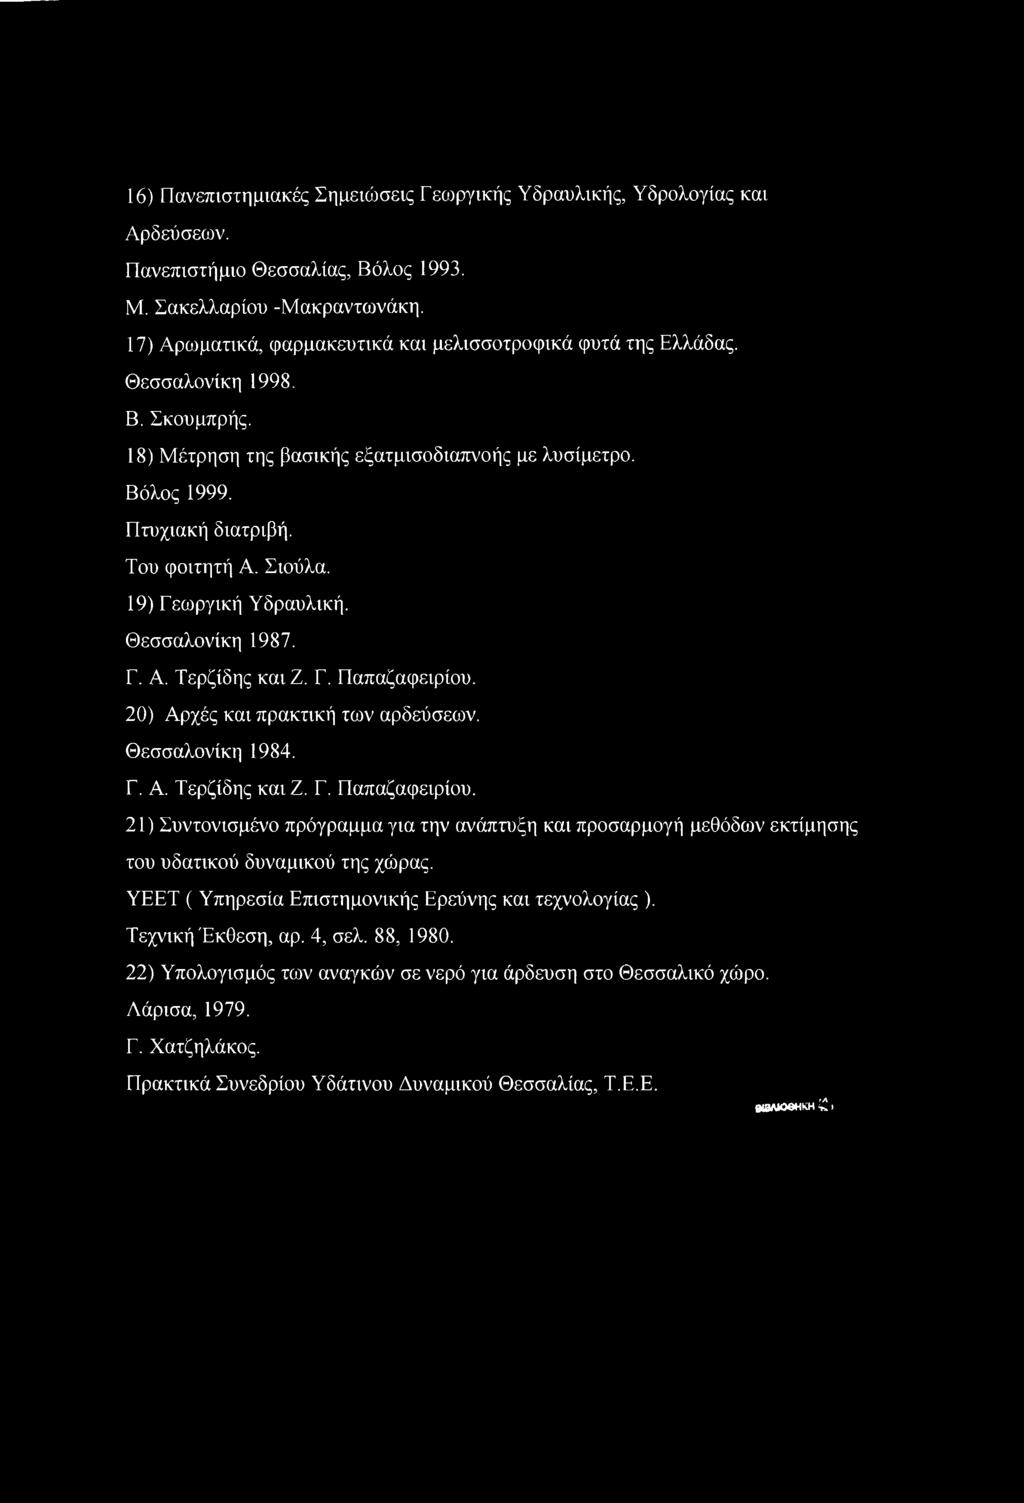 Σιούλα. 19) Γεωργική Υδραυλική. Θεσσαλονίκη 1987. Γ. Α. Τερζίδης καιζ. Γ. Παπαζαφειρίου. 20) Αρχές και πρακτική των αρδεύσεων. Θεσσαλονίκη 1984. Γ. Α. Τερζίδης καιζ. Γ. Παπαζαφειρίου. 21) Συντονισμένο πρόγραμμα για την ανάπτυξη και προσαρμογή μεθόδων εκτίμησης του υδατικού δυναμικού της χώρας.